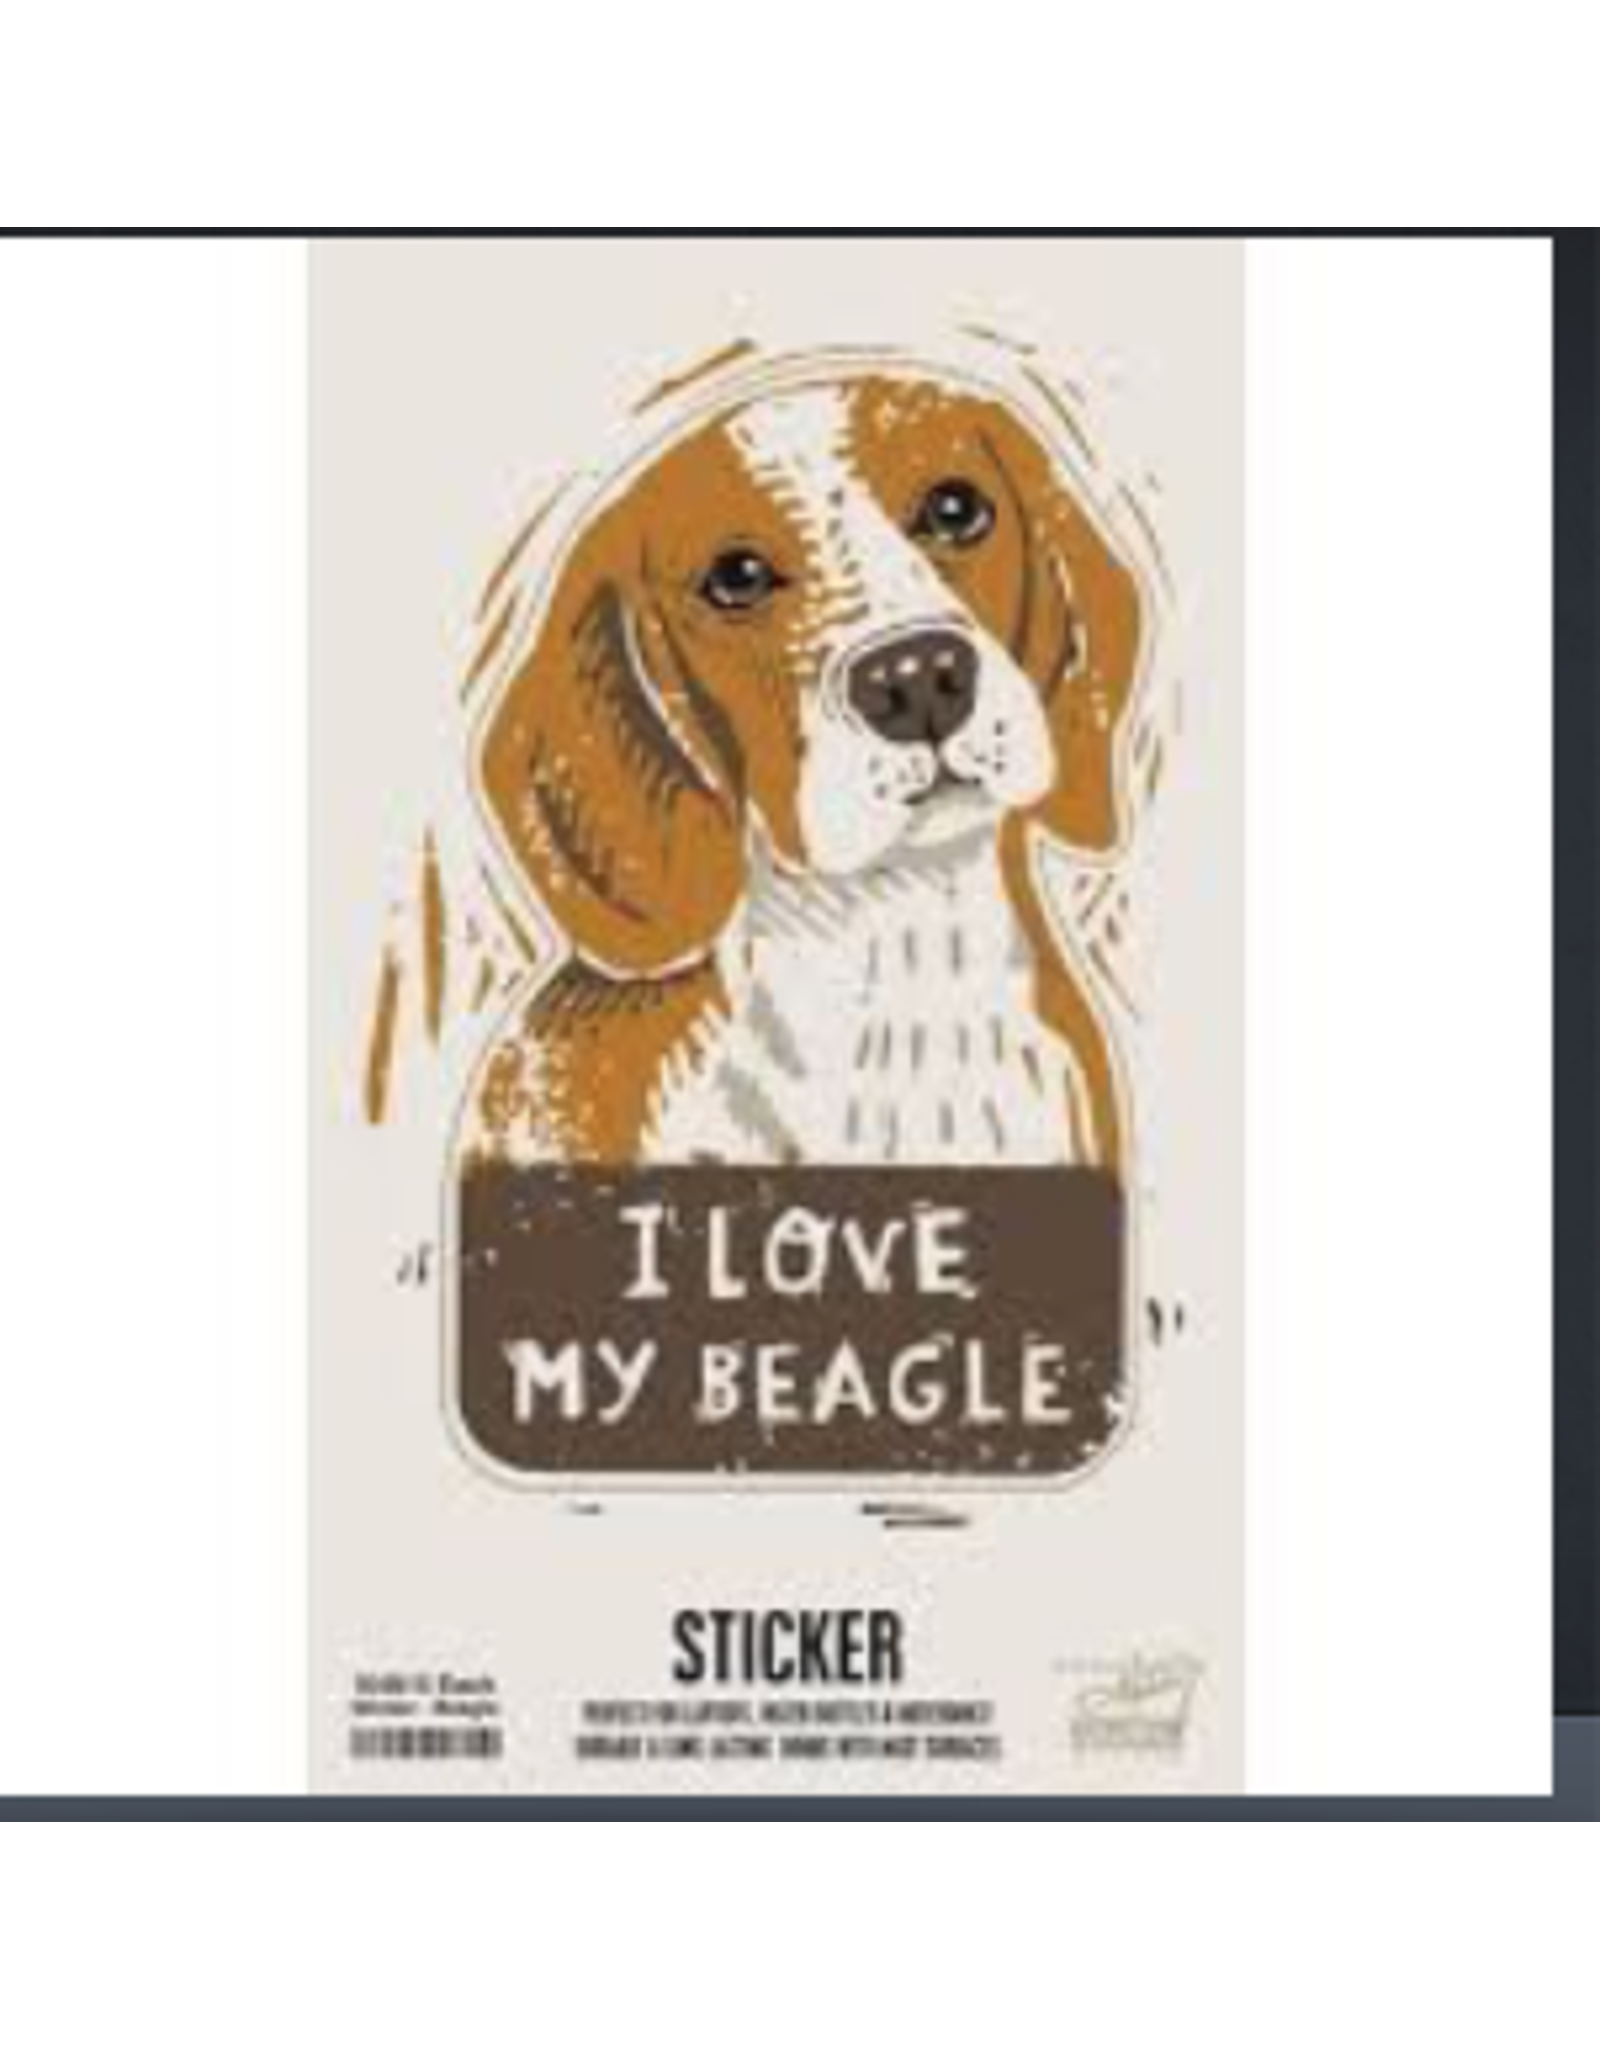 Primitives by Kathy Sticker, I Love My Beagle